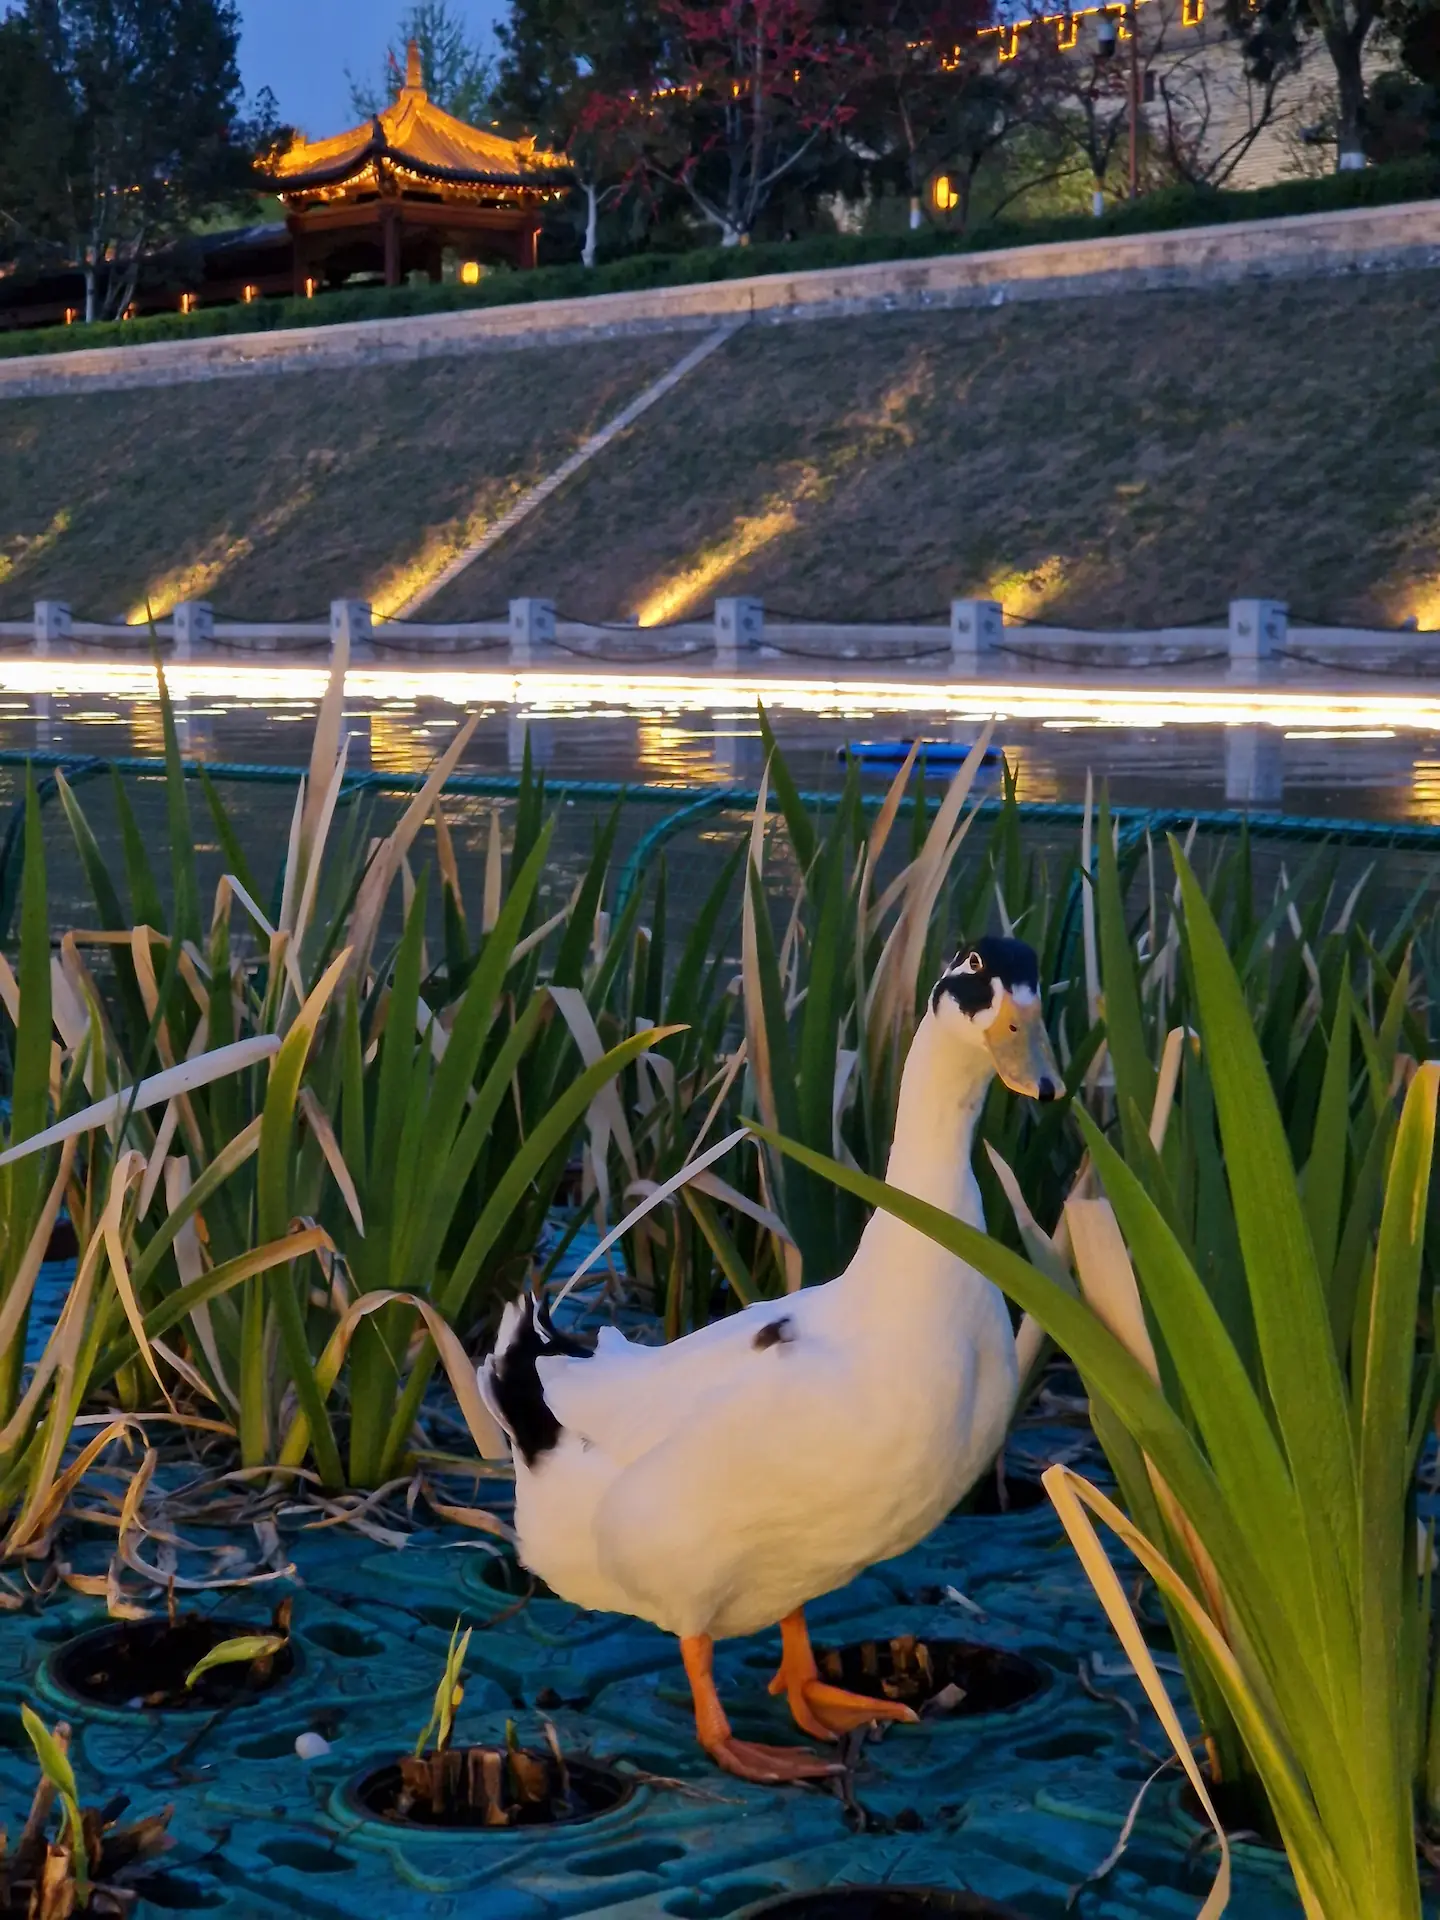 Un gros canard debout sur une plateforme herbeuse qui flotte sur les douves, en fond on voit les remparts illuminés